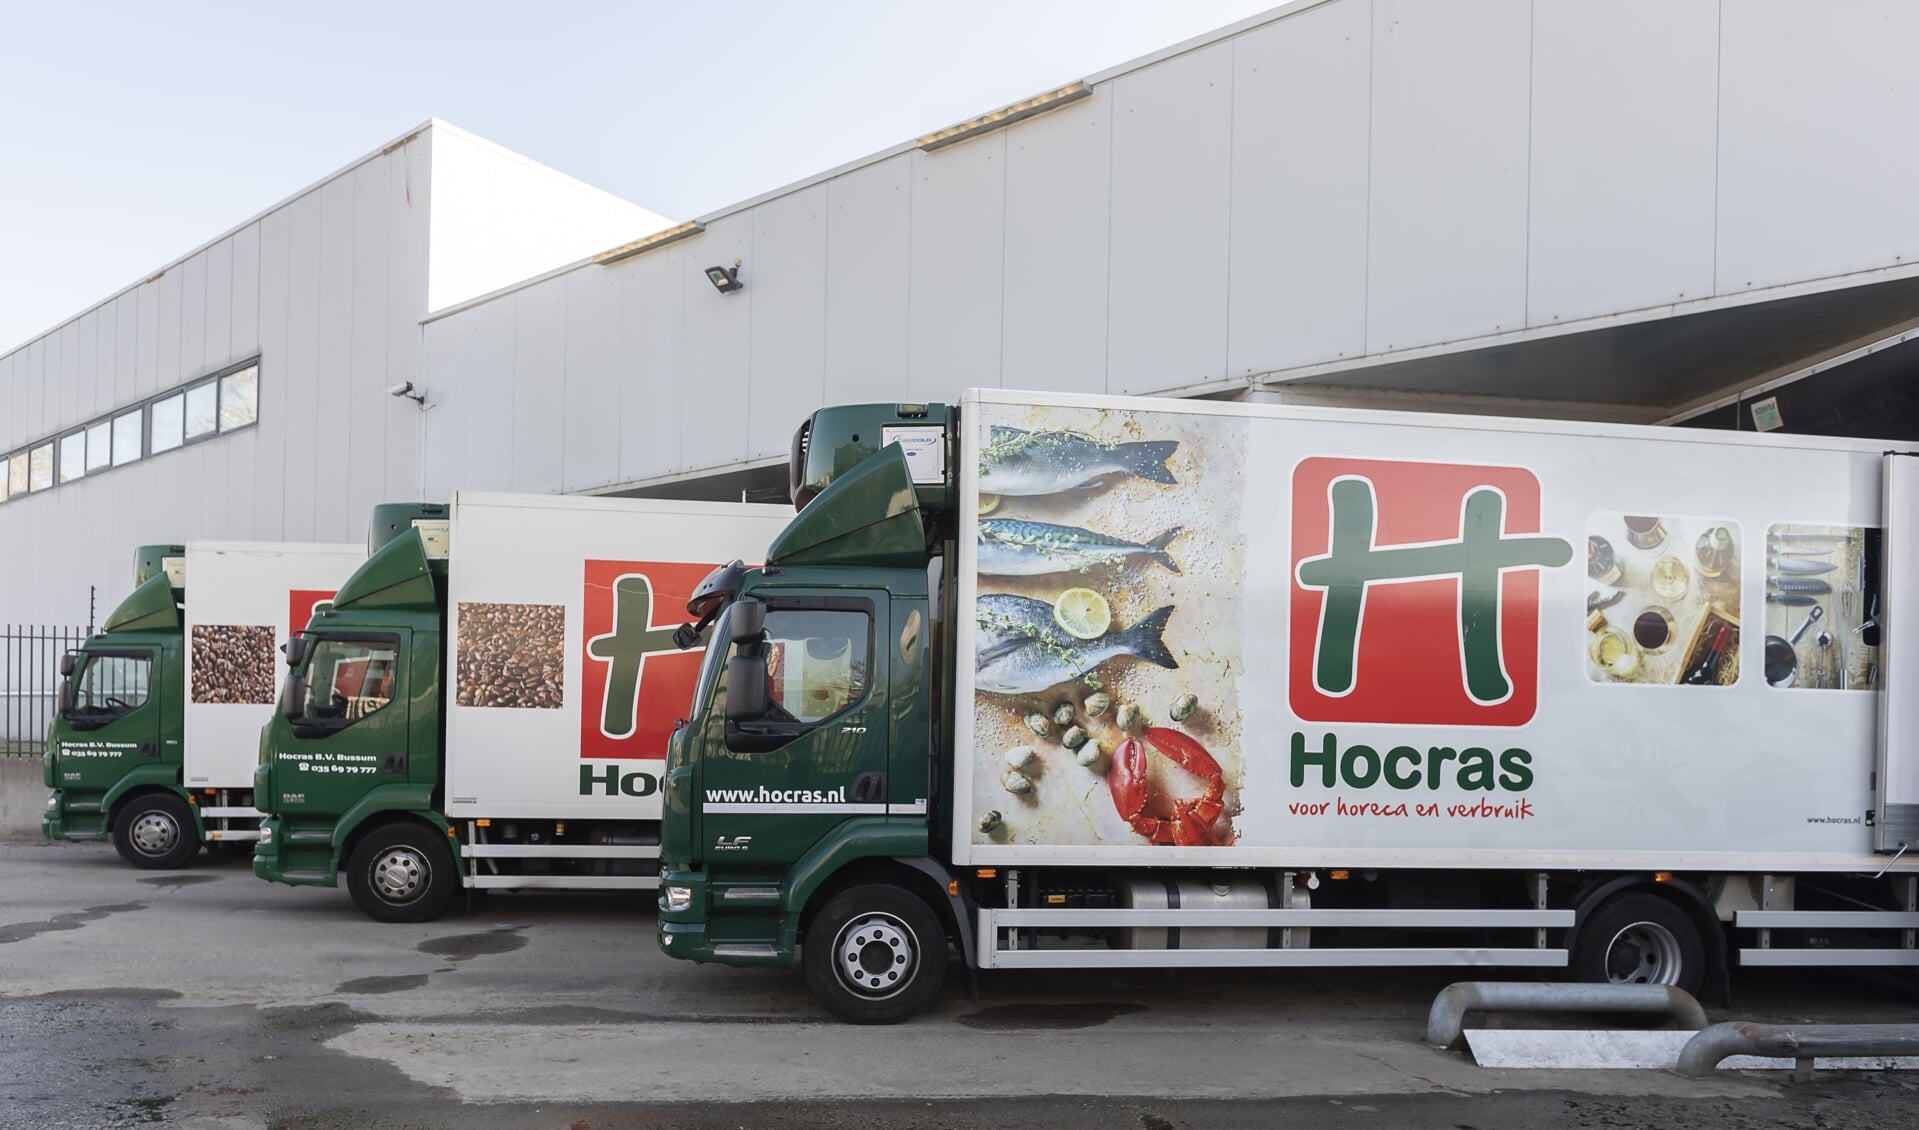 Binnenkort zijn er nog alleen maar vrachtwagens van de Hocras te zien in het Gooi.